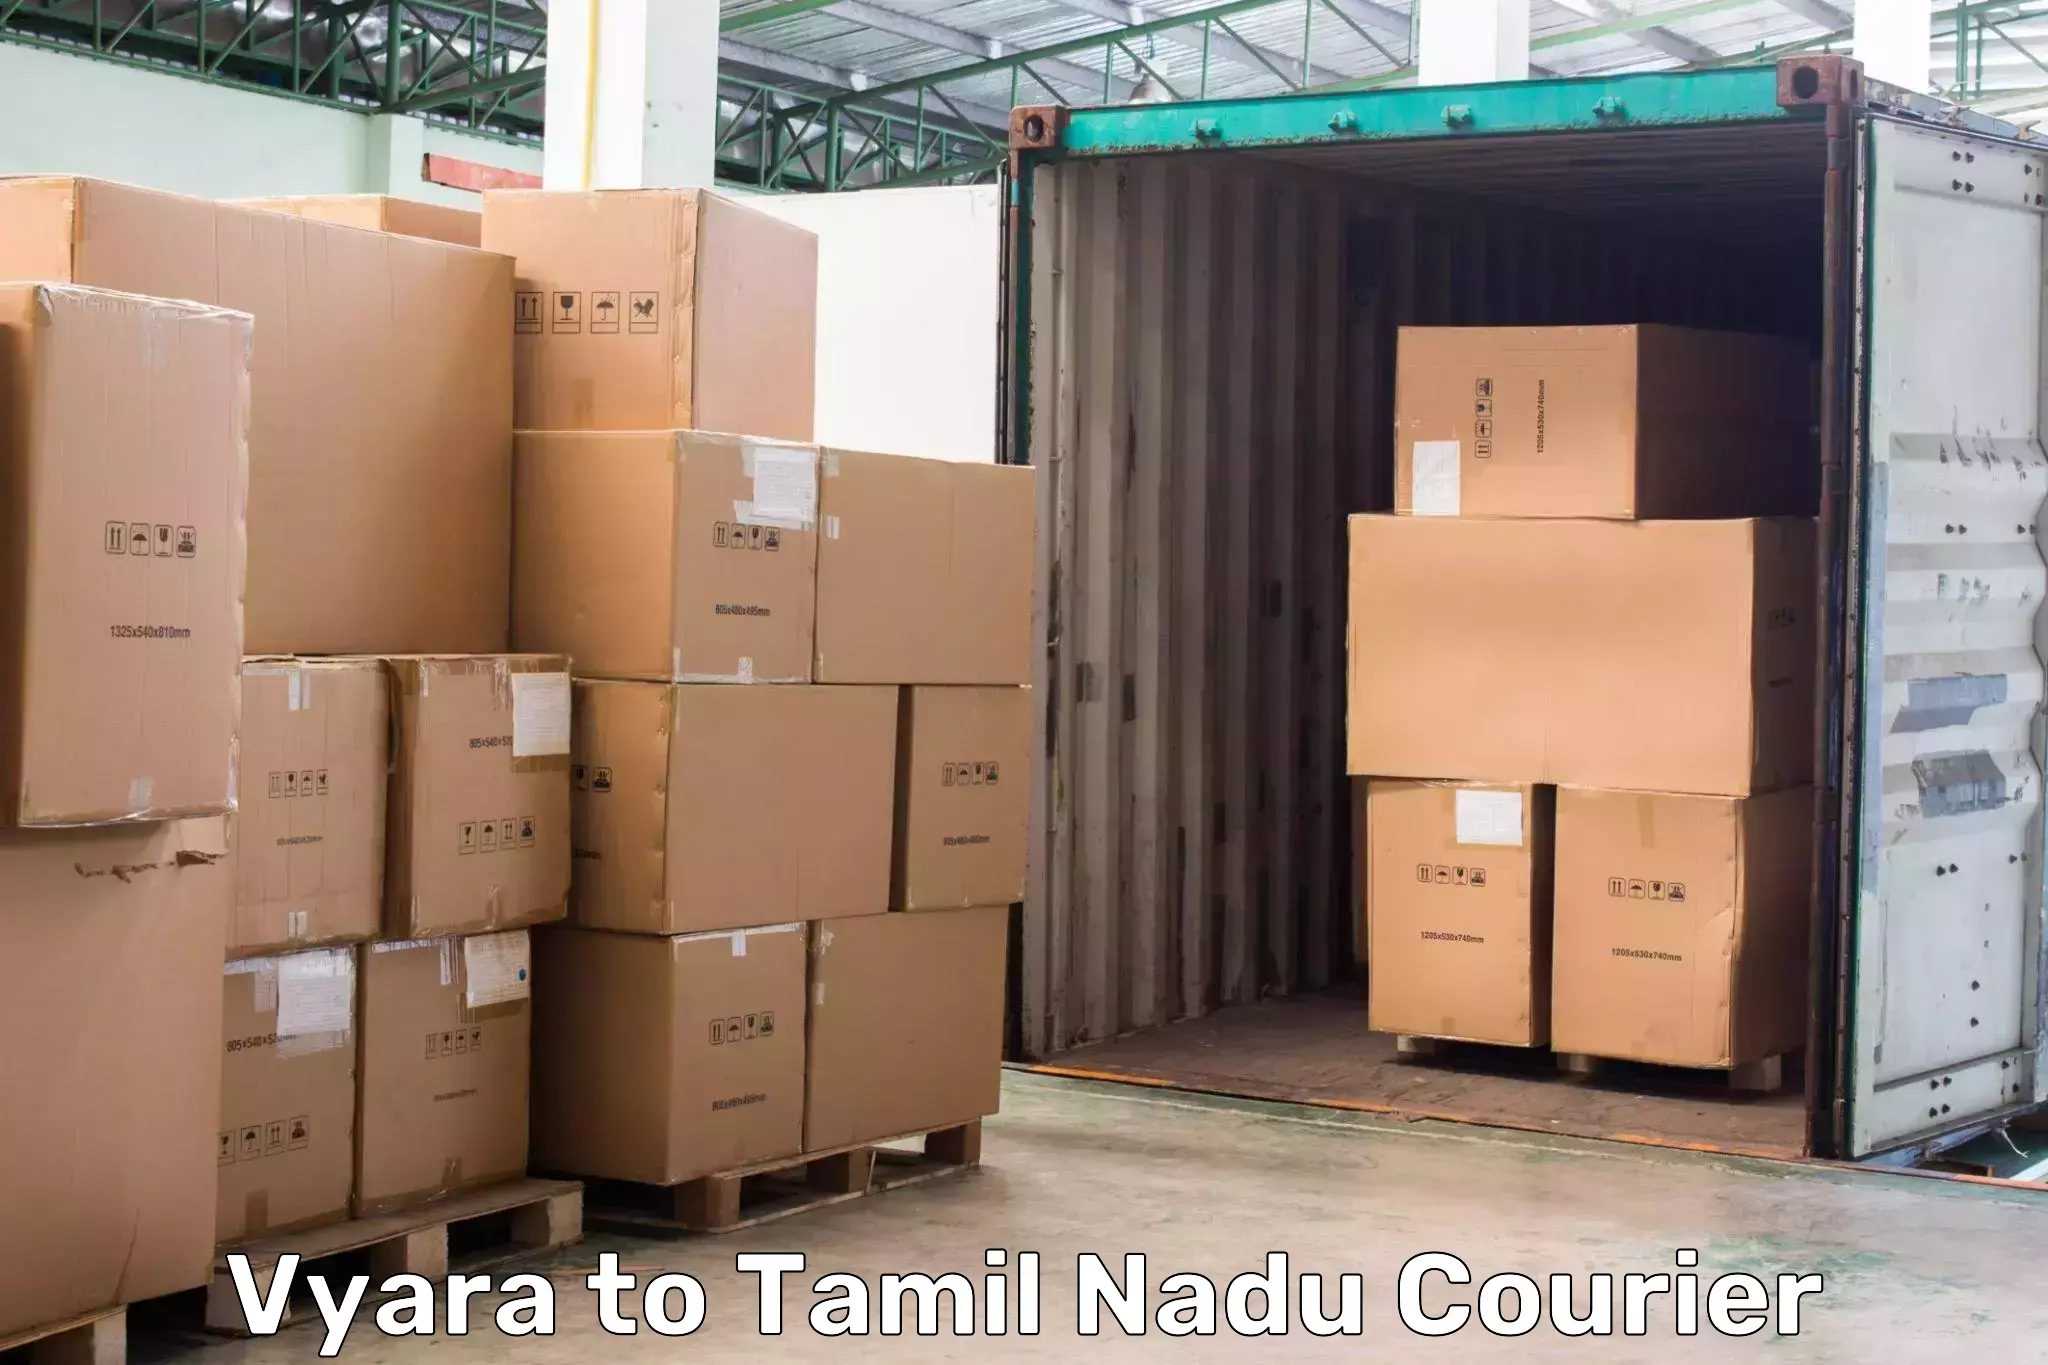 Comprehensive shipping network Vyara to Tamil Nadu